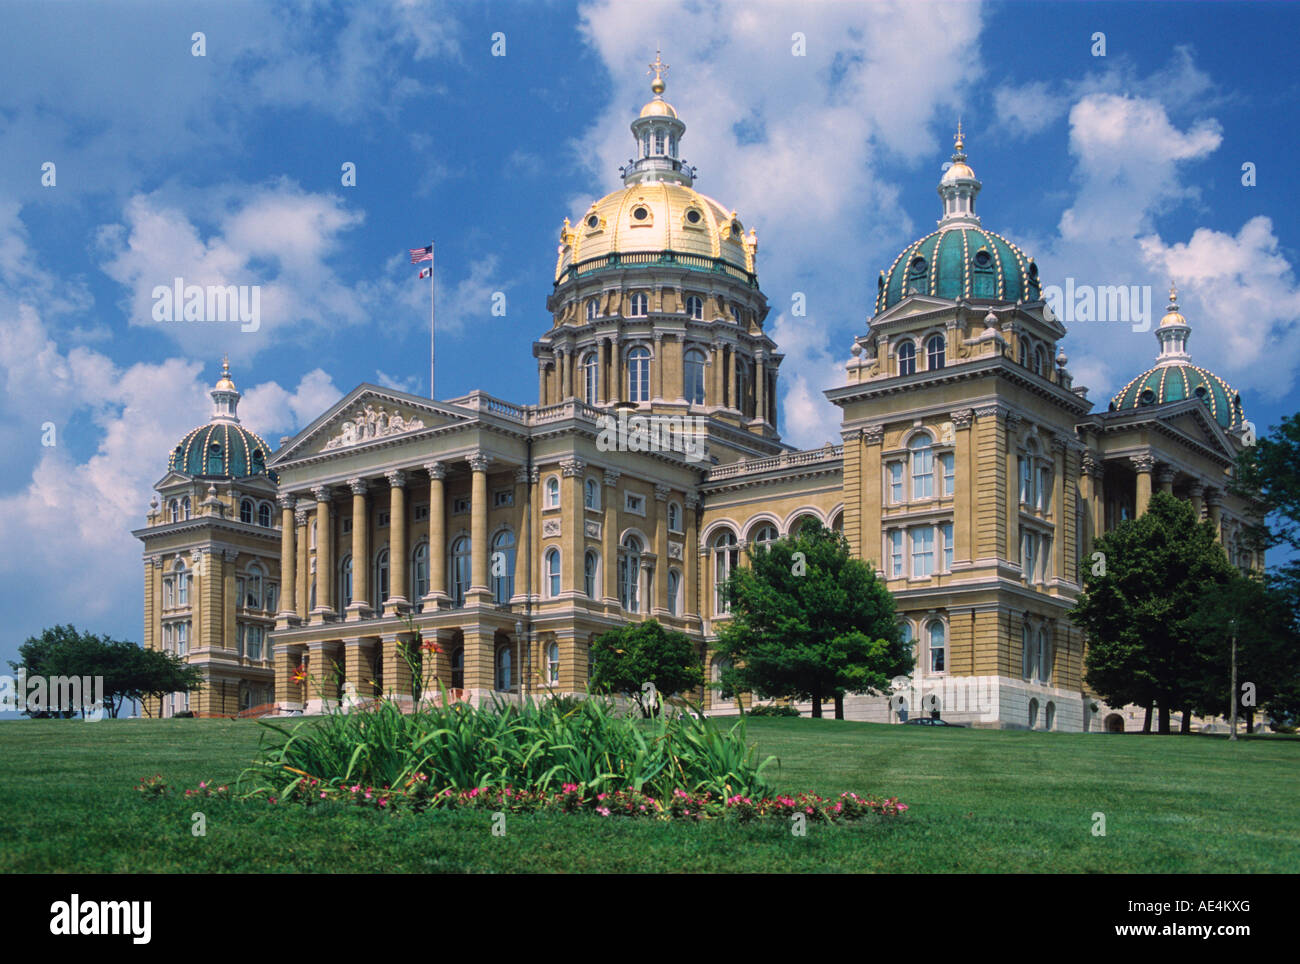 Iowa State Capitol, Des Moines, Iowa, United States of America, North America Stock Photo